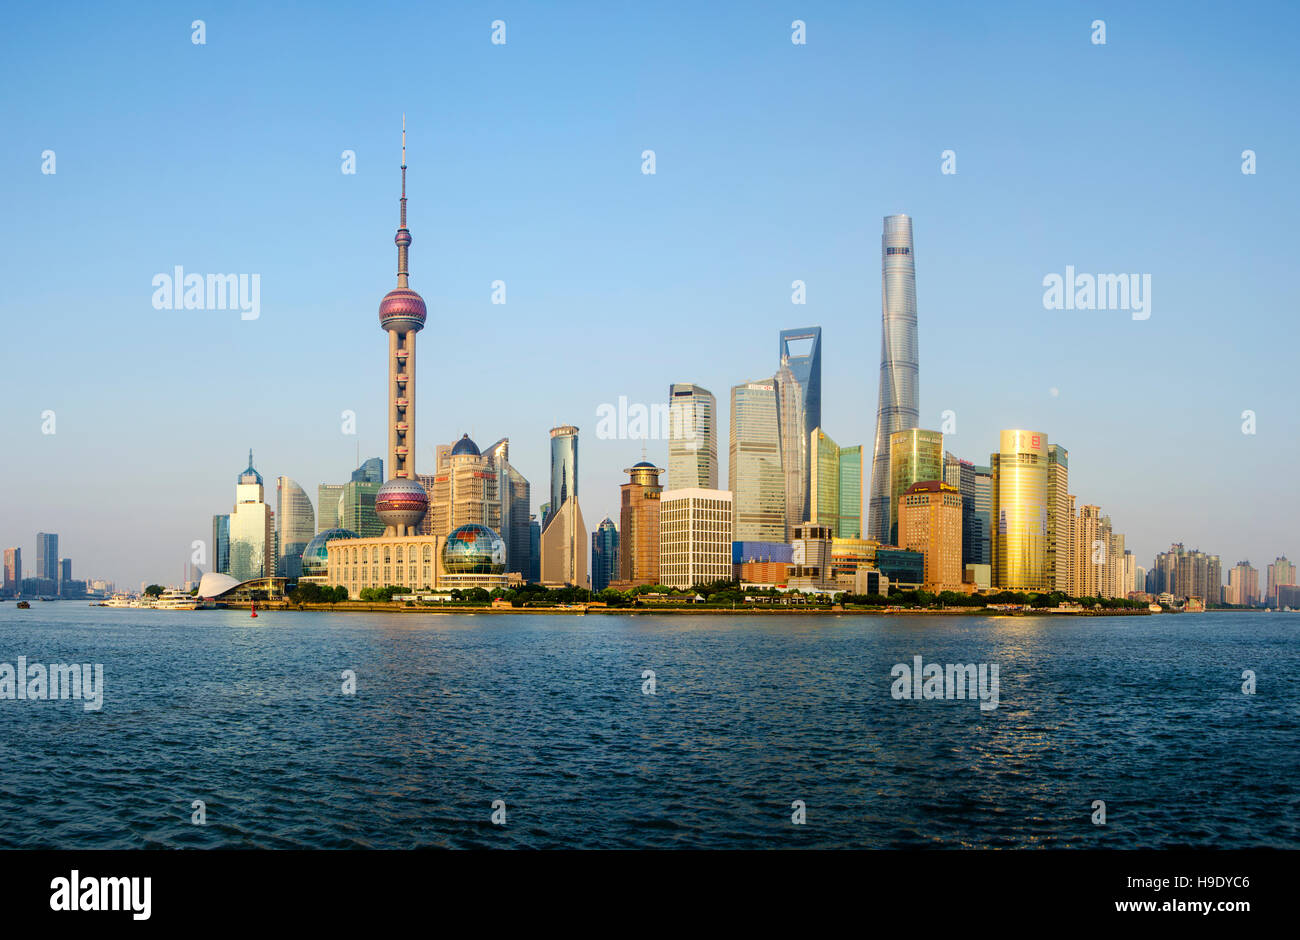 Shanghai Pudong New Horizon de paysage urbain dans le soleil doré. Le bâtiment le plus haut de la Tour de Shanghai est situé à Pudong Banque D'Images